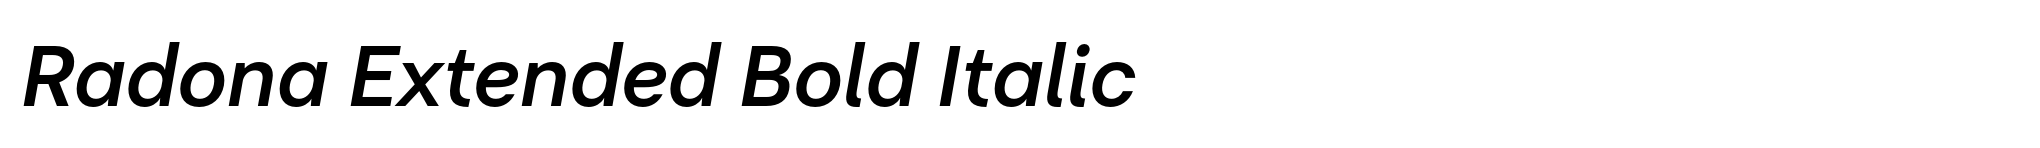 Radona Extended Bold Italic image